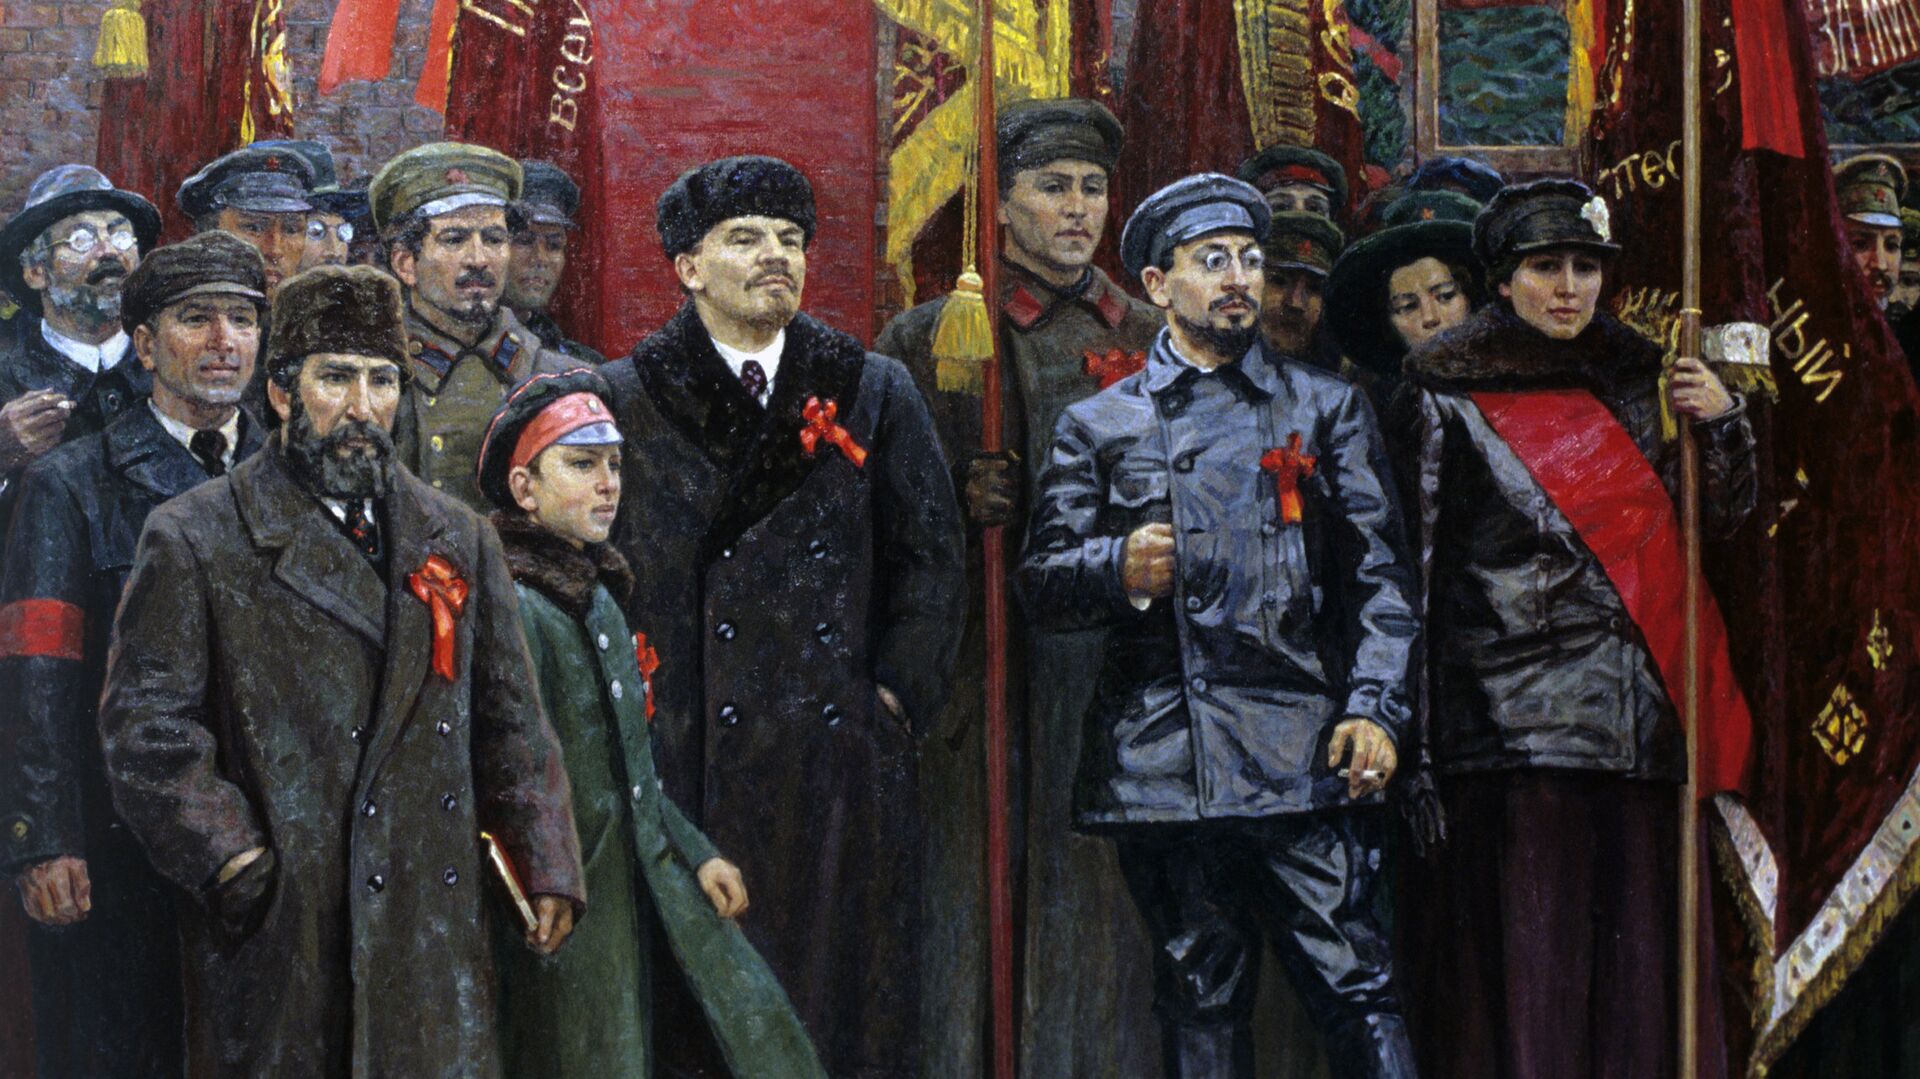 Репродукция картины Красная площадь 7 ноября 1918 года - РИА Новости, 1920, 15.09.2020